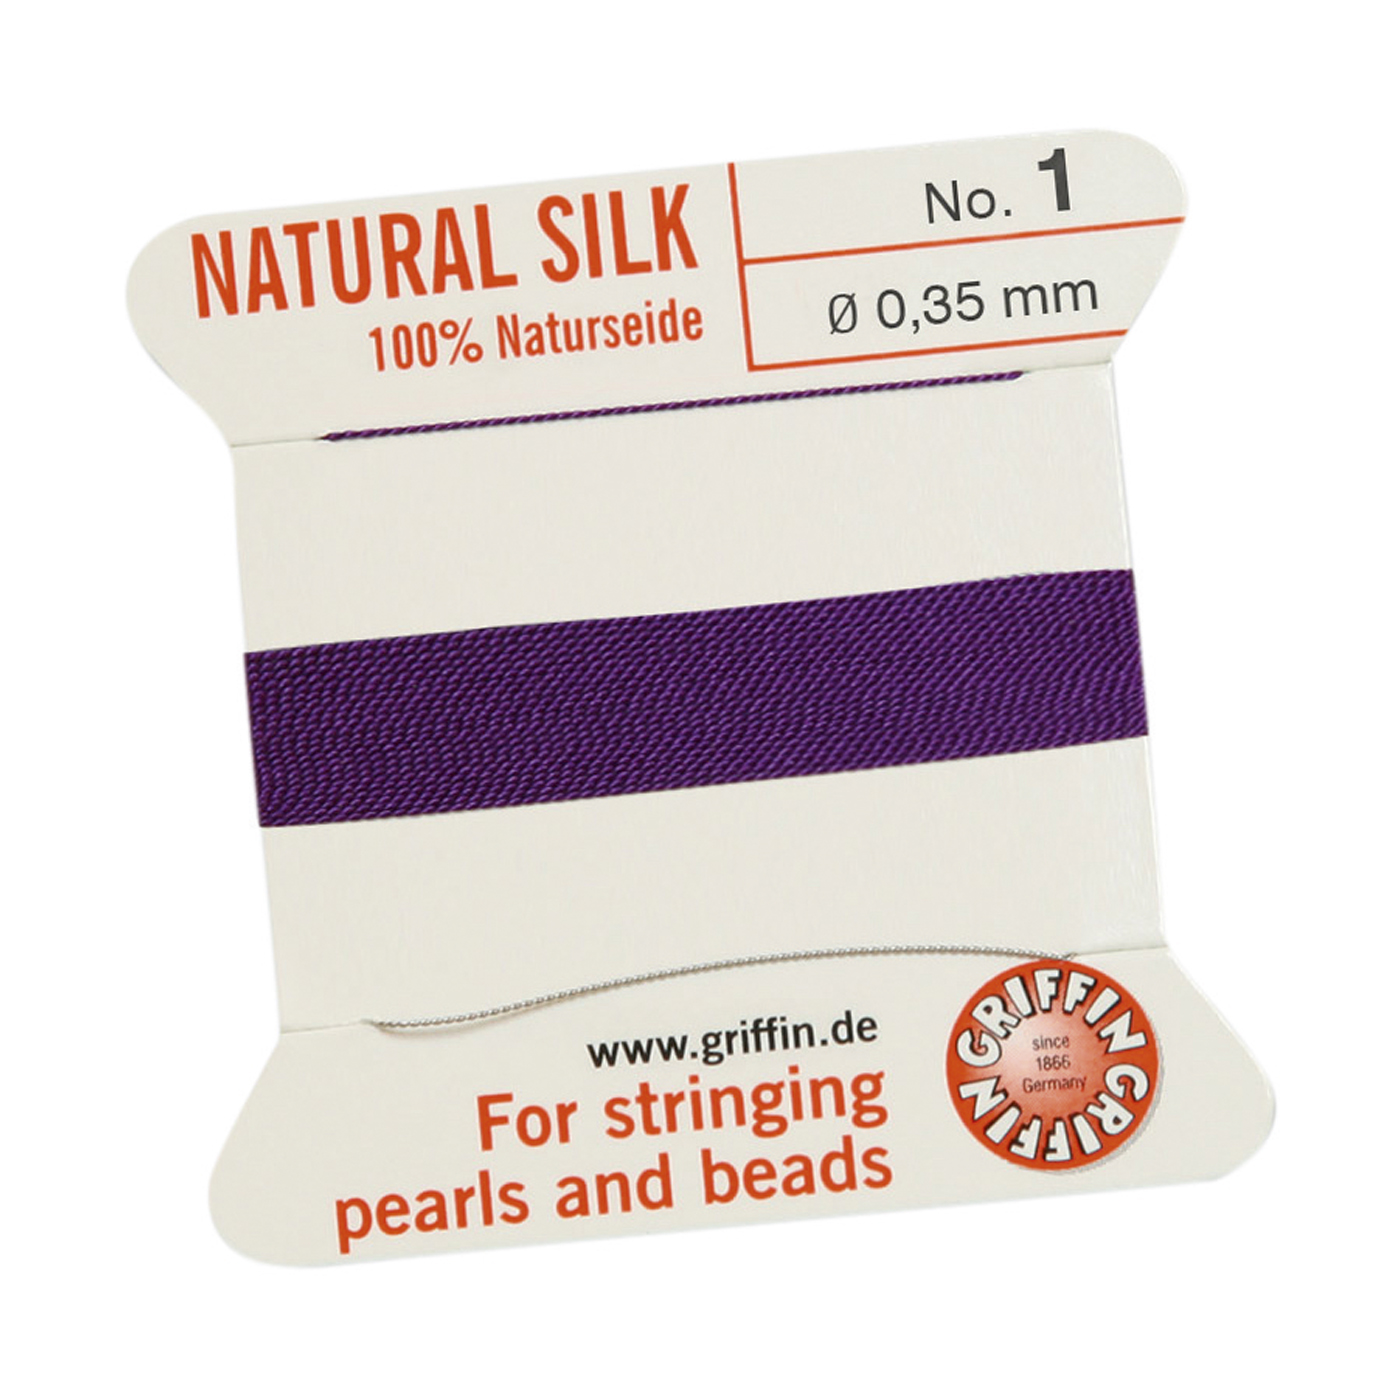 Bead Cord 100% Natural Silk, Amethyst, No. 1 - 2 m